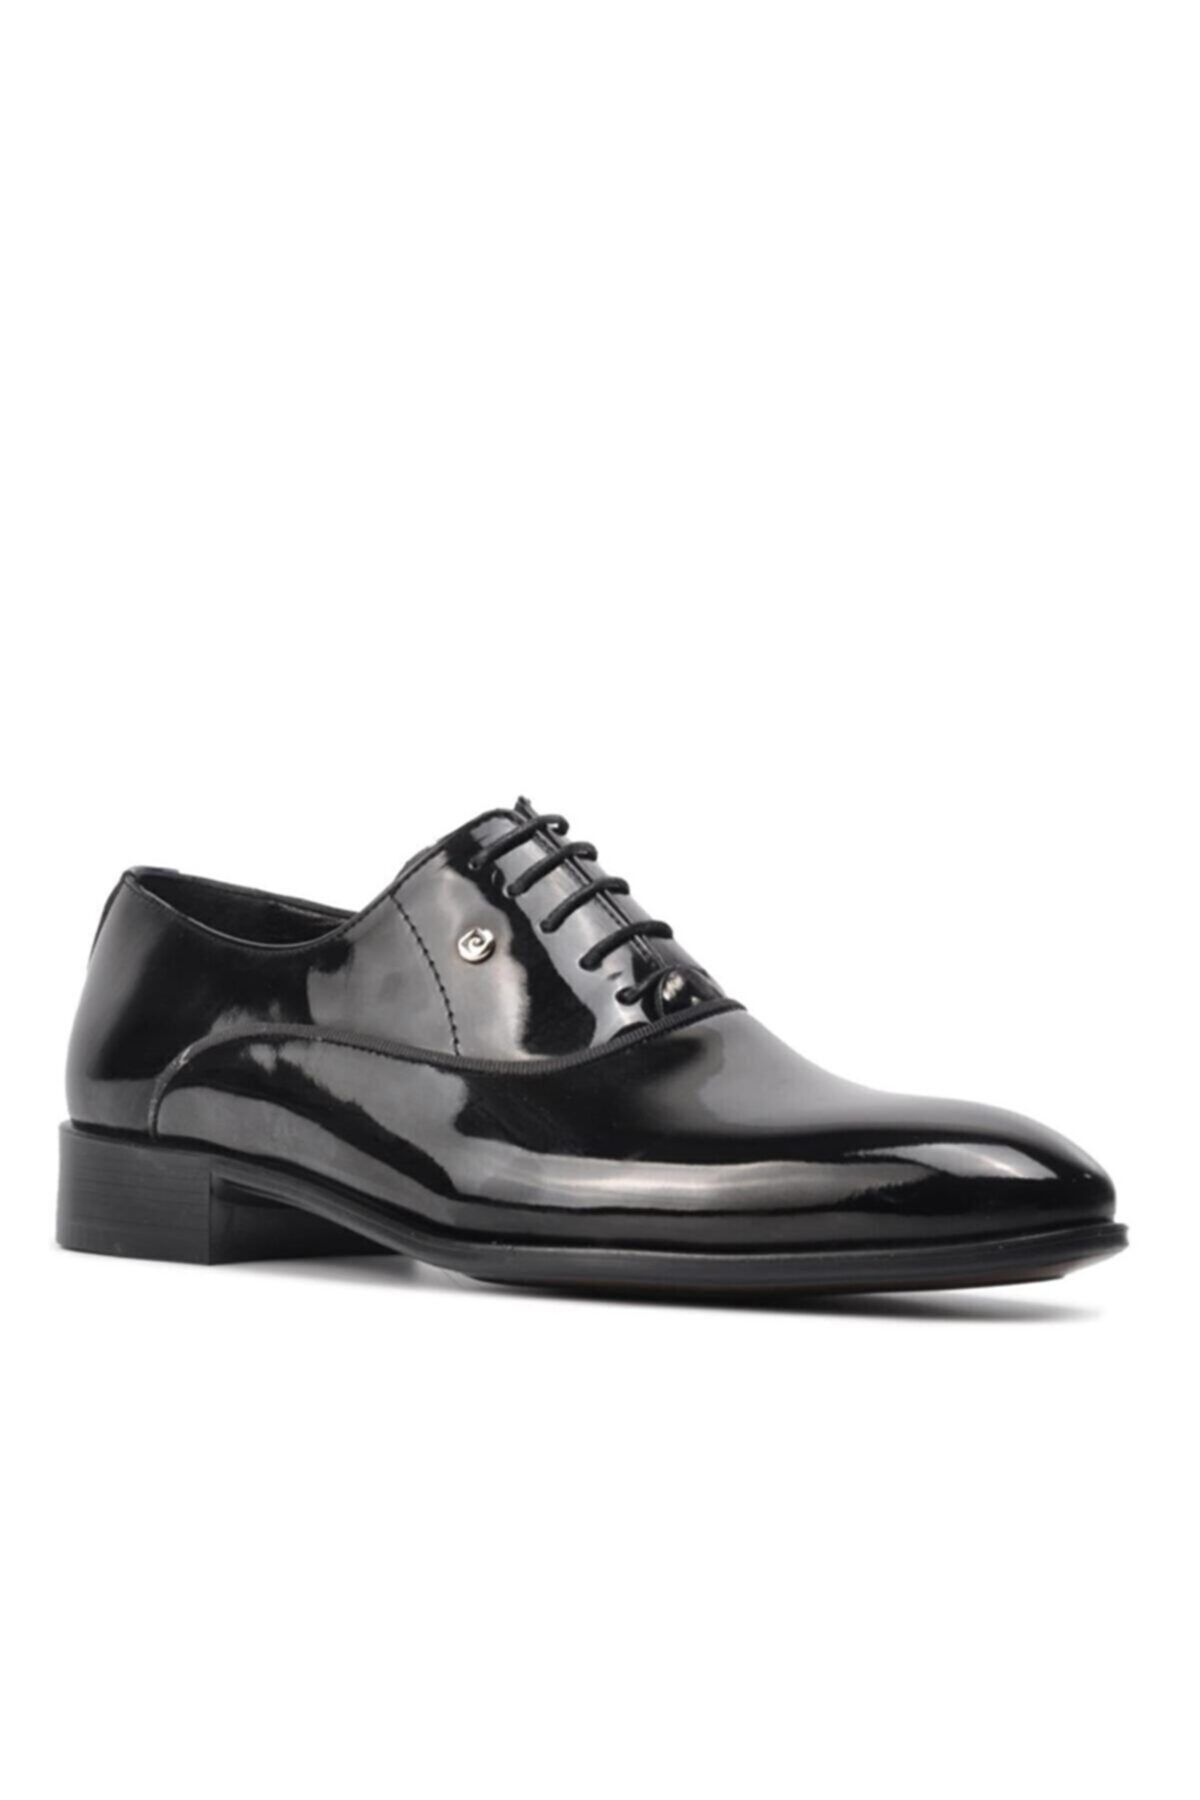 Pierre Cardin Erkek Siyah Rugan Klasik Ayakkabı